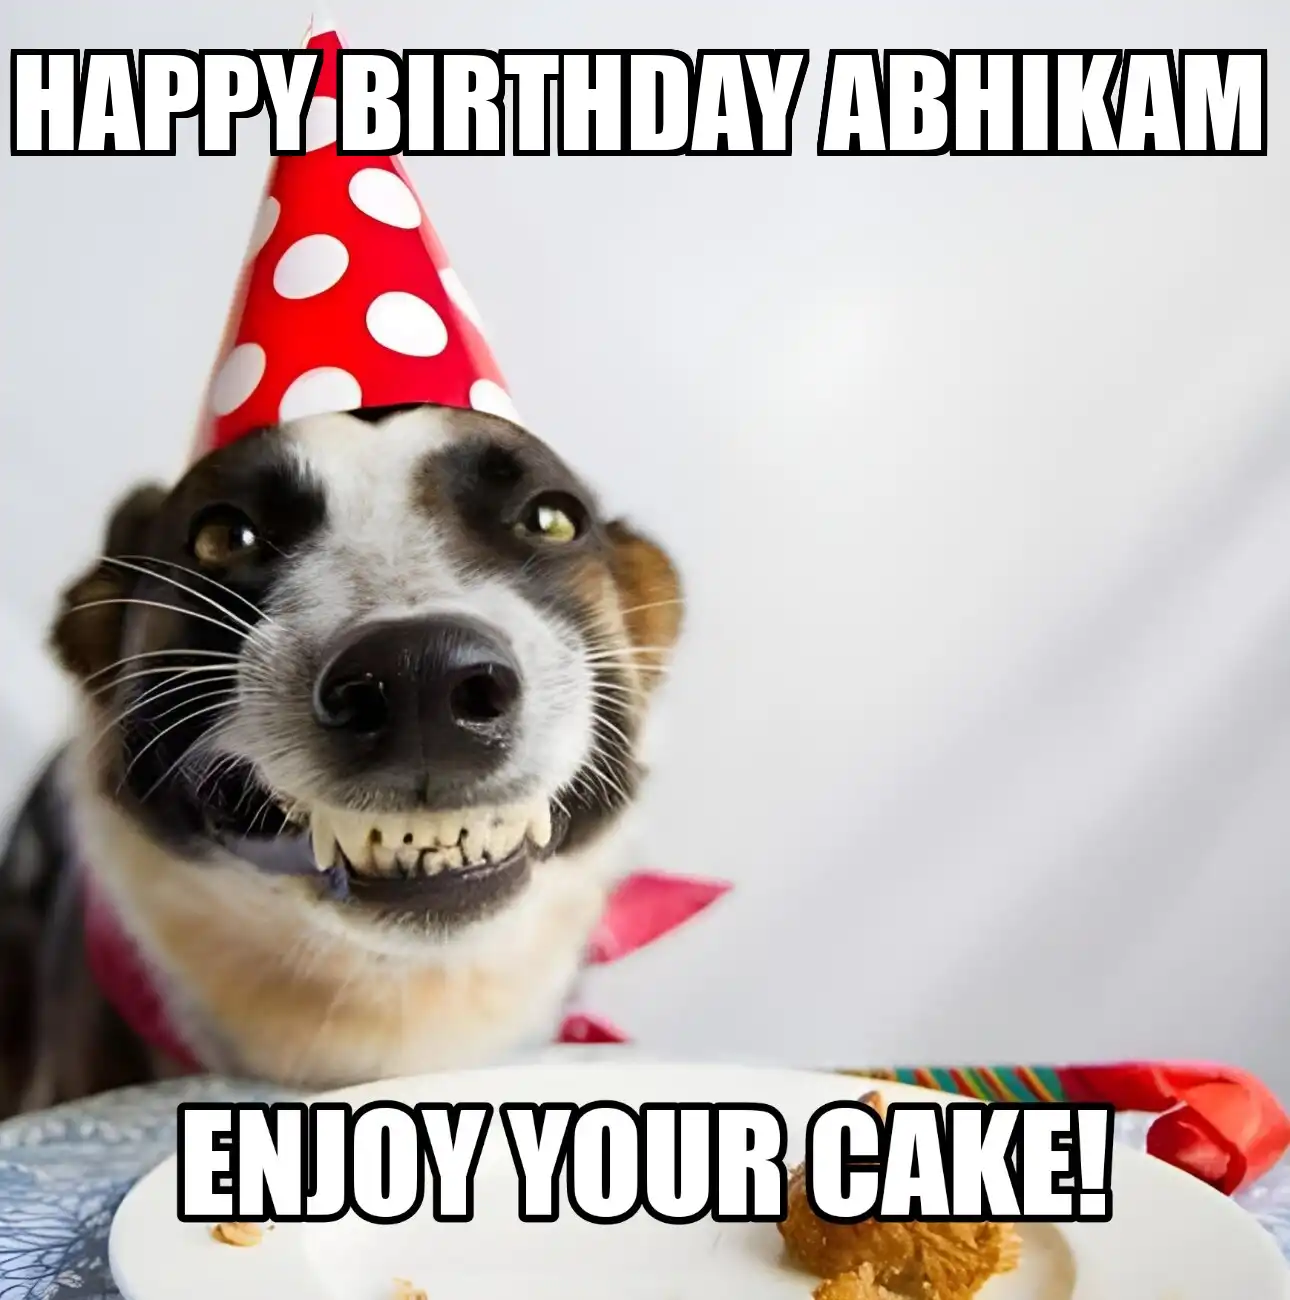 Happy Birthday Abhikam Enjoy Your Cake Dog Meme